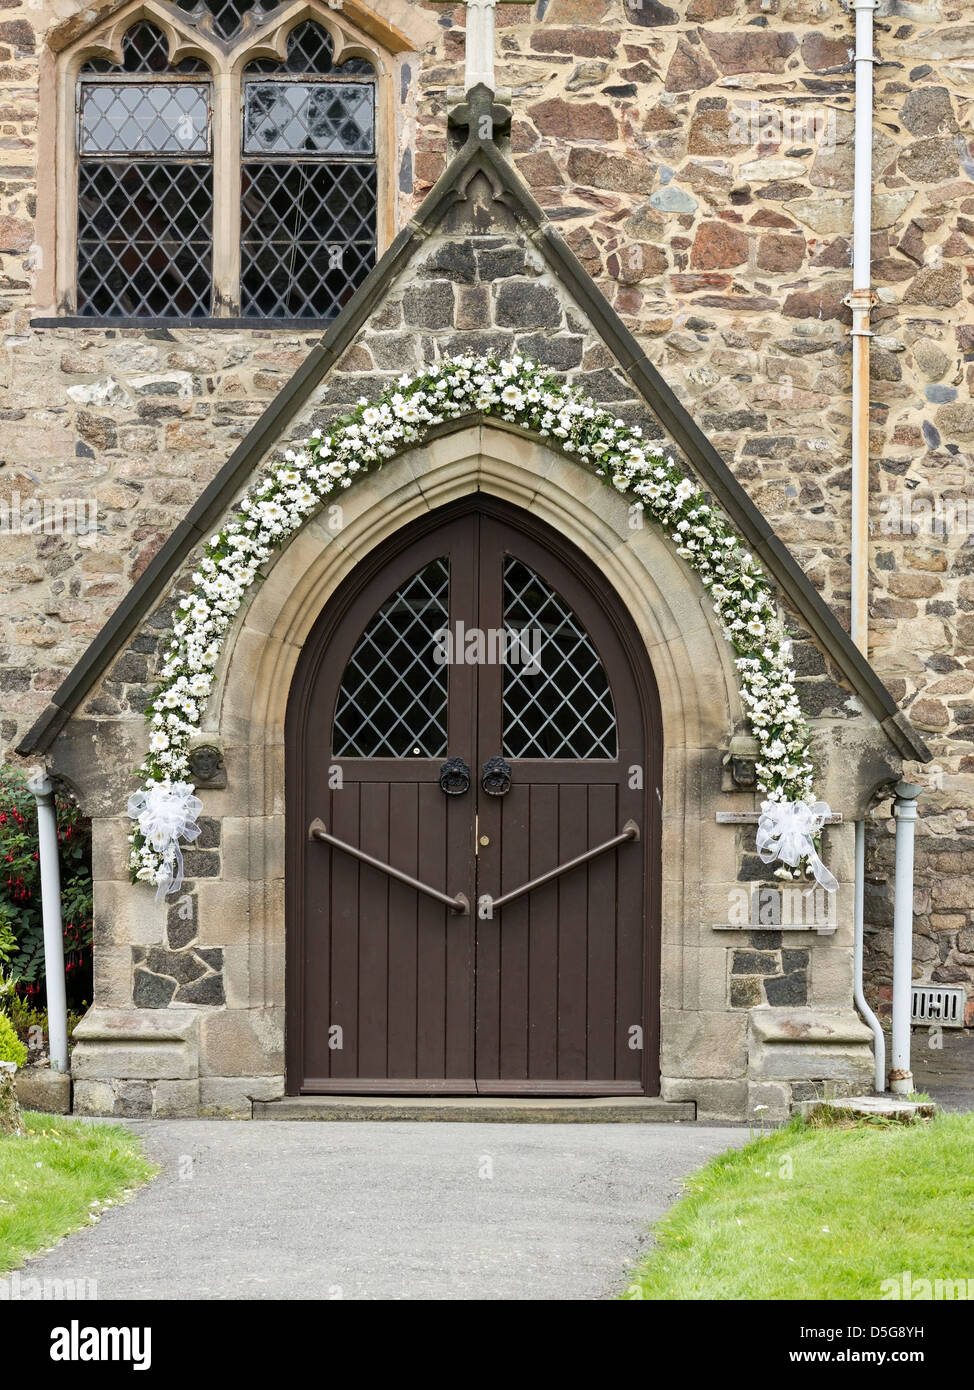 Porte de l'église avec mariage floral Garland, All Saints Church, Newtown Linford, Leicestershire, England, UK Banque D'Images